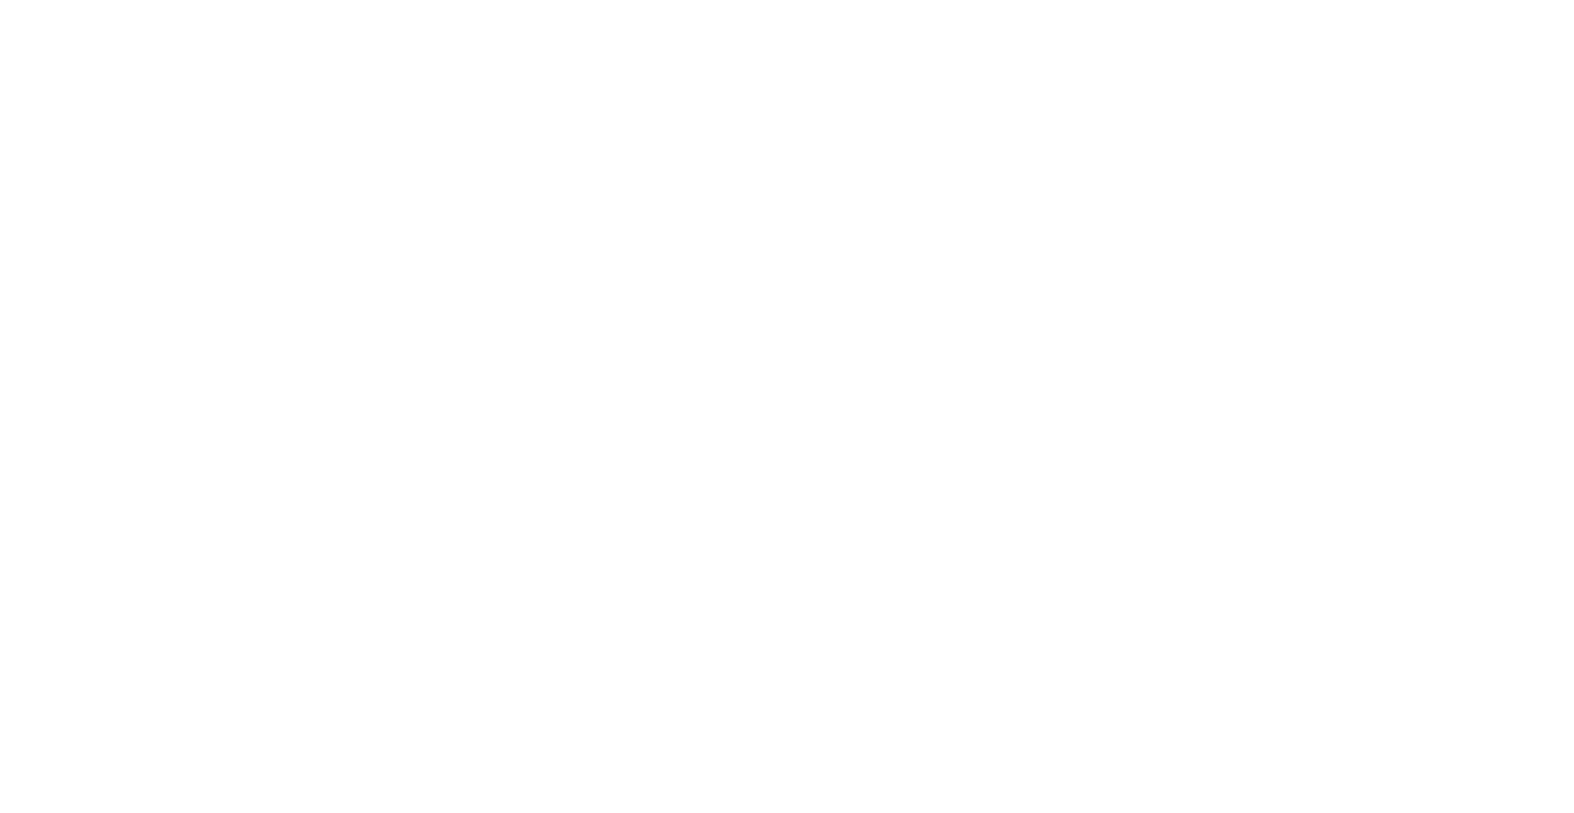 RSA Insurance Group